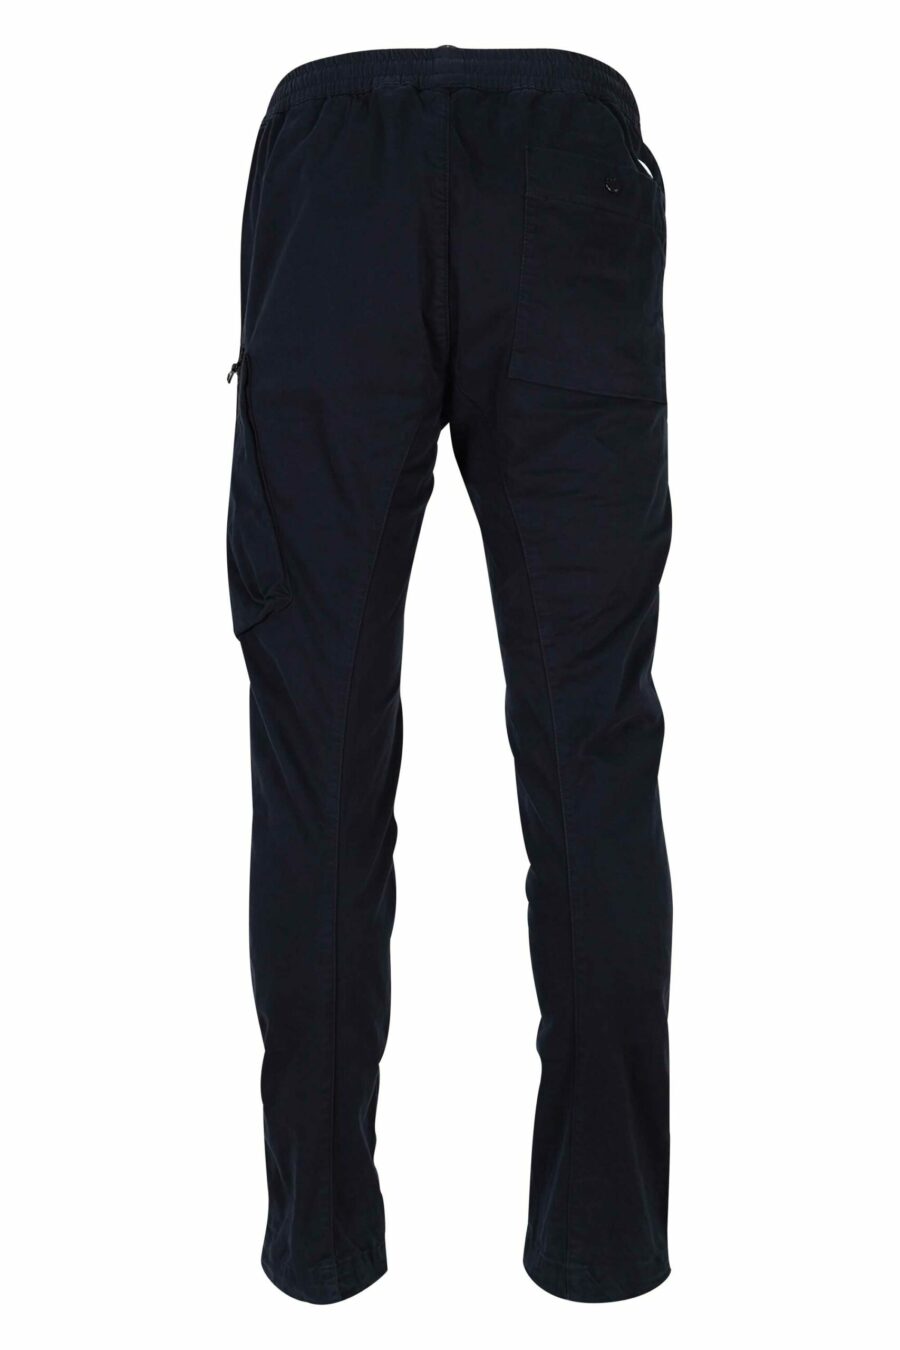 Pantalón azul oscuro de satén elástico con bolsillo lateral y logo lente - 7620943578485 2 1 scaled